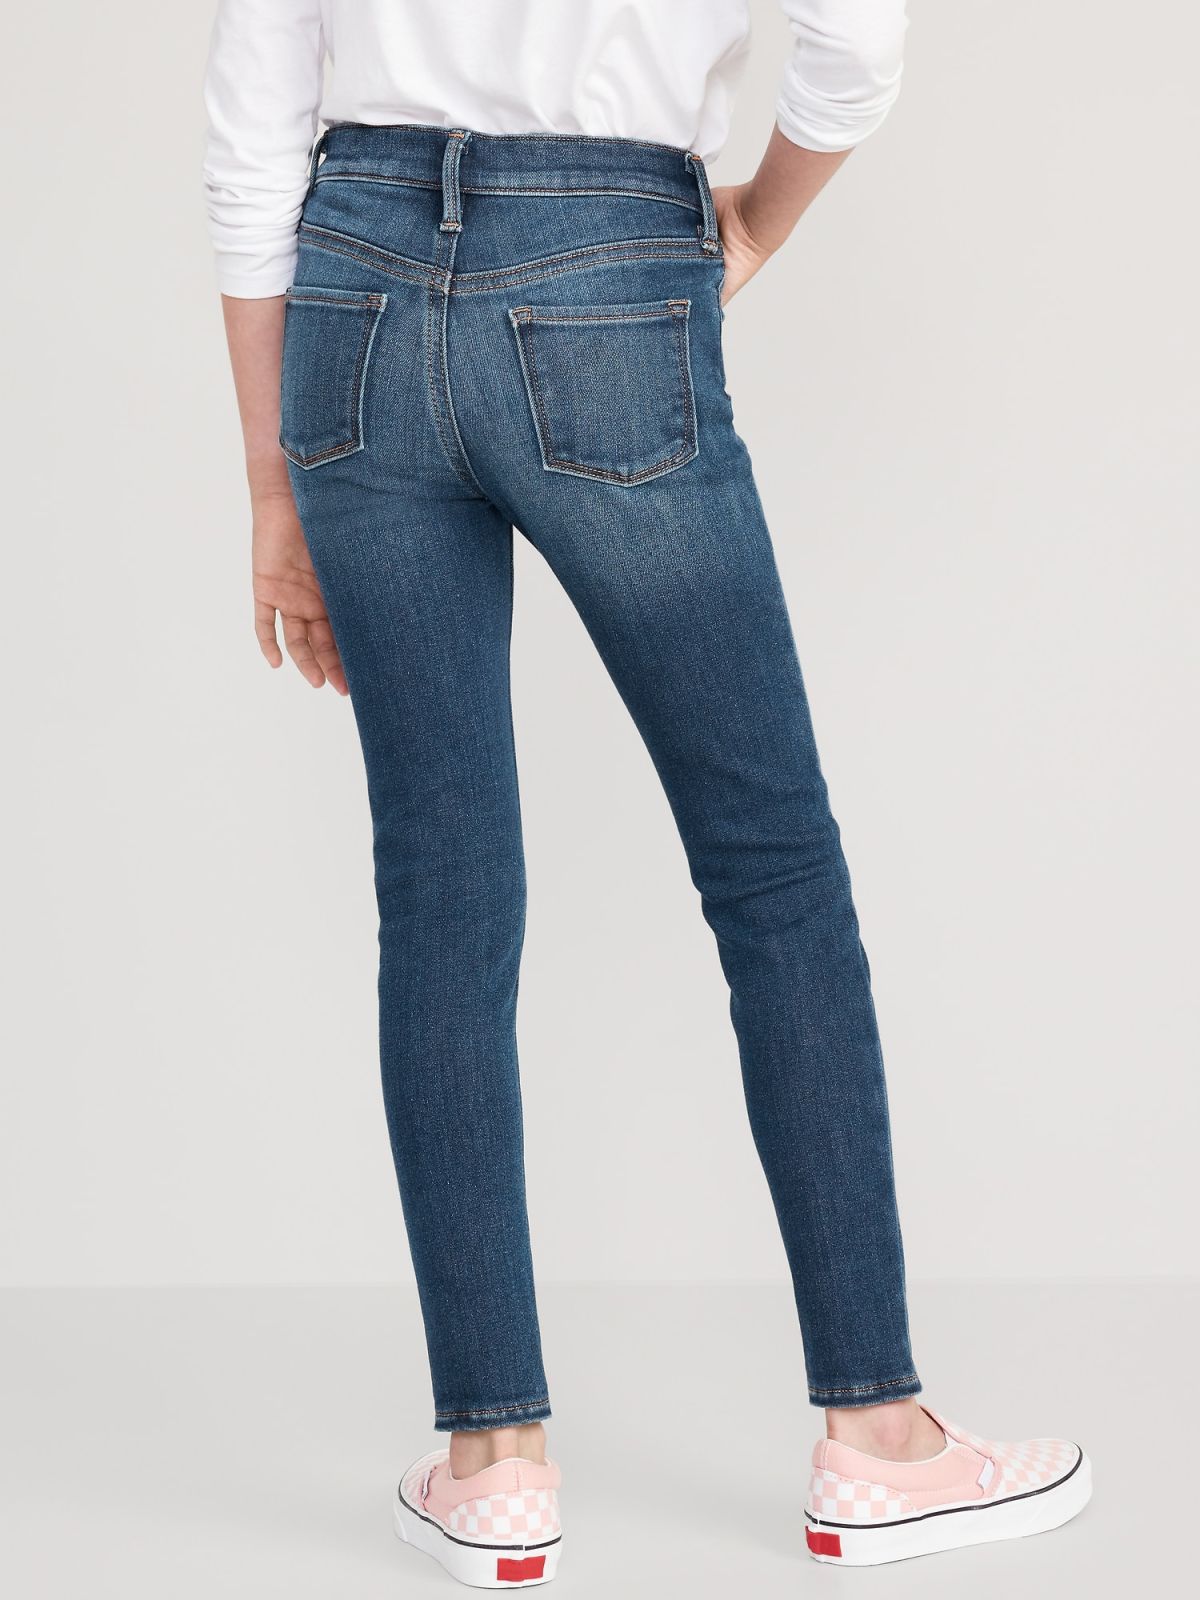  ג'ינס בגזרת סקיני / בנות של OLD NAVY